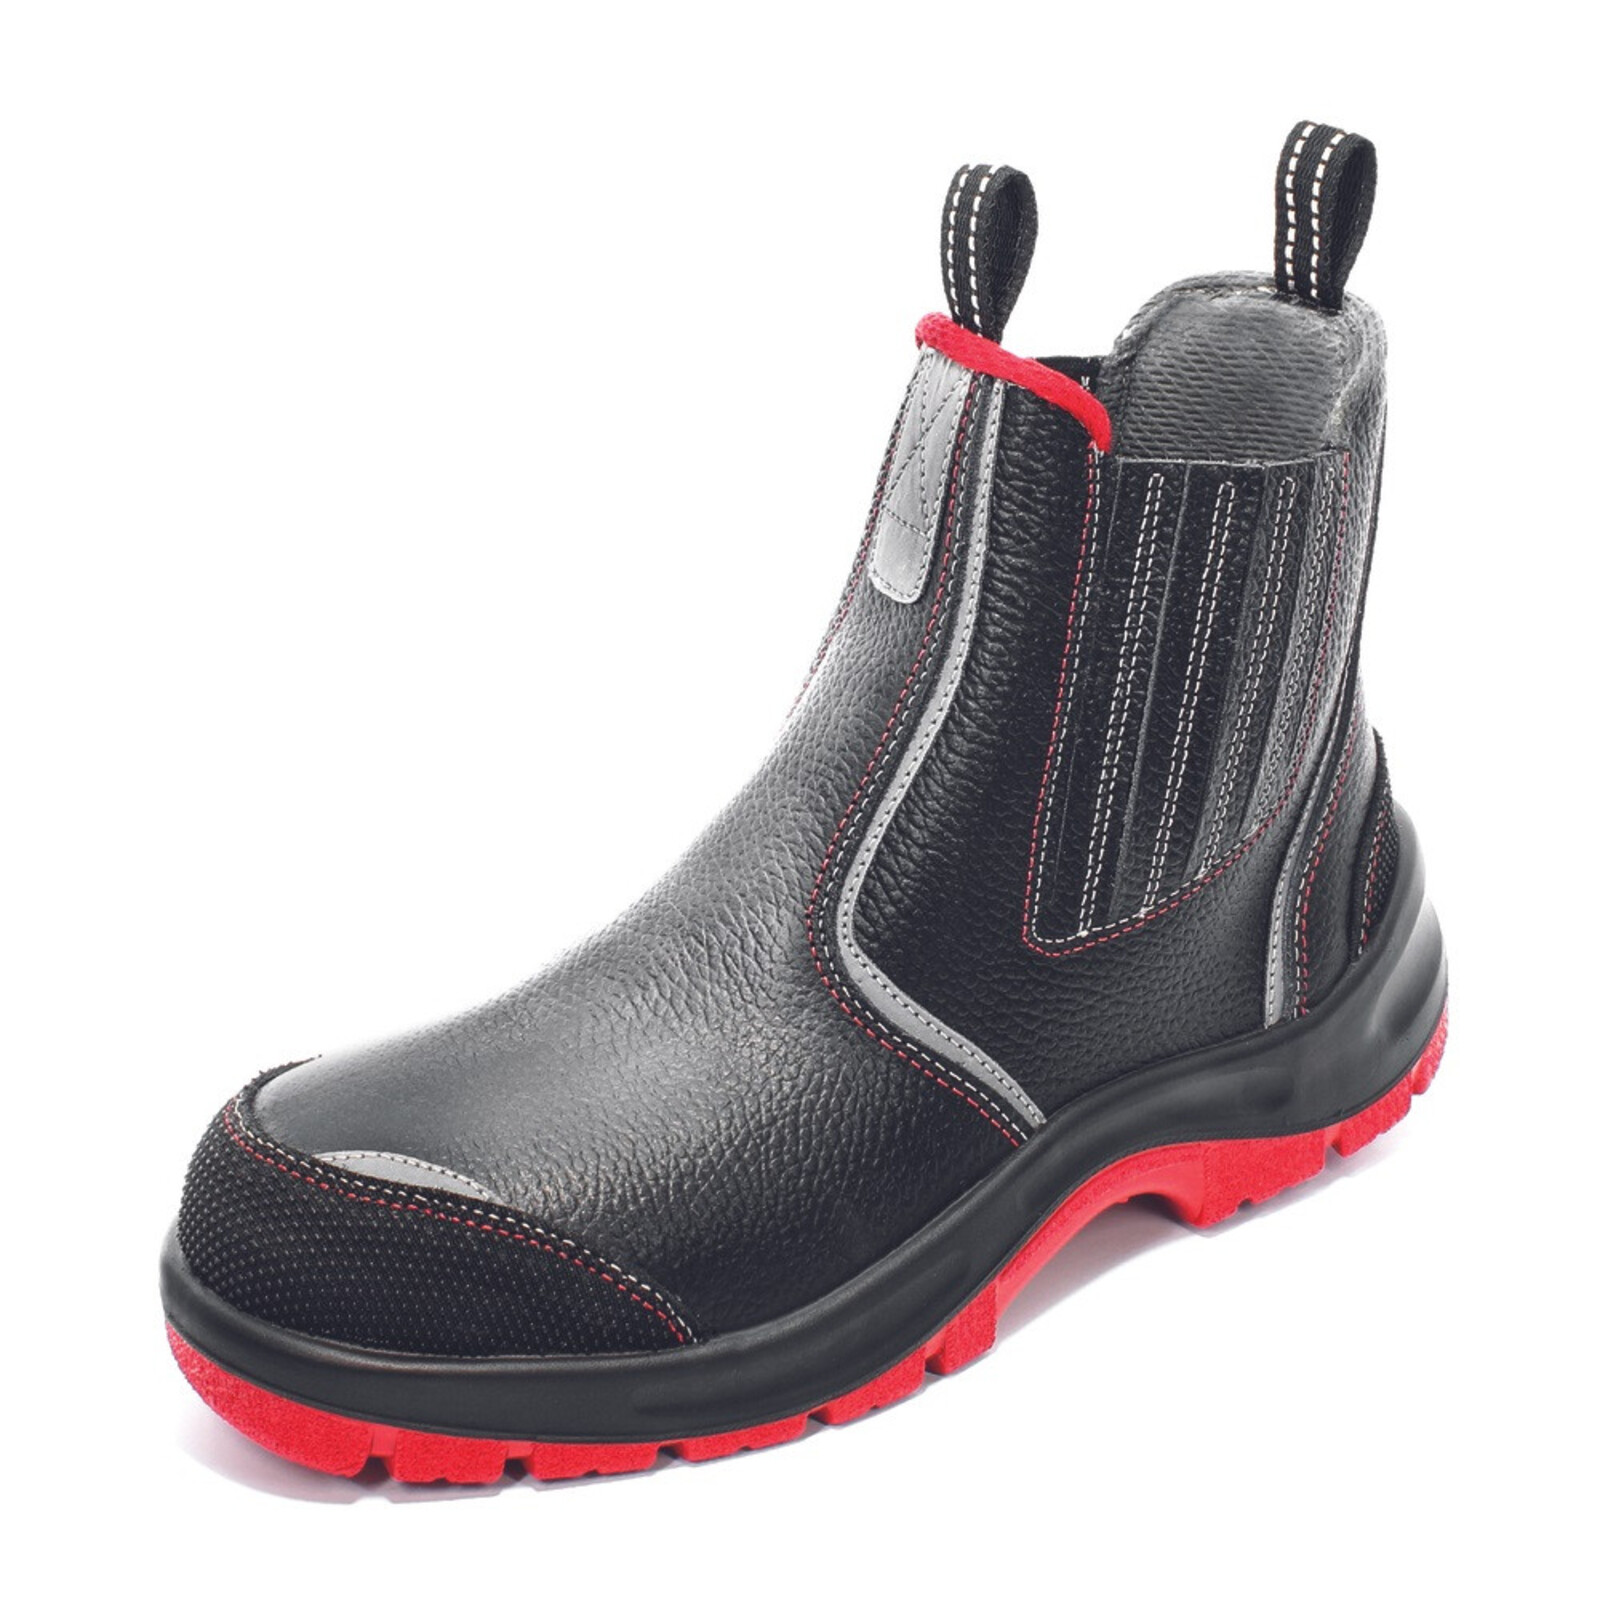 Bezpečnostná členková obuv Panda Strong Nuovo Eurotech MF S3 SRC - veľkosť: 45, farba: čierna/červená